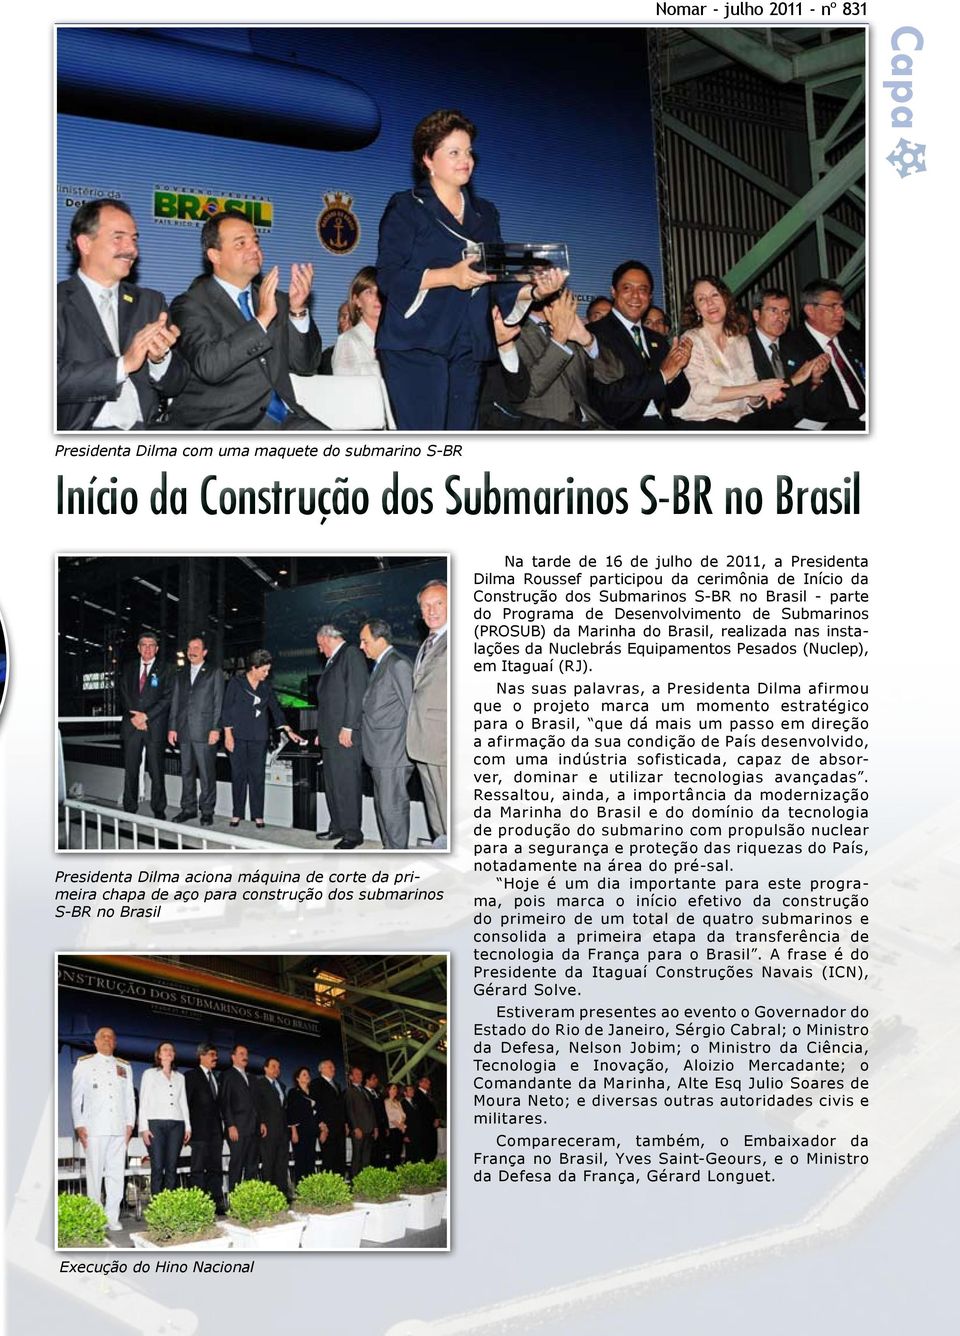 Desenvolvimento de Submarinos (PROSUB) da Marinha do Brasil, realizada nas instalações da Nuclebrás Equipamentos Pesados (Nuclep), em Itaguaí (RJ).